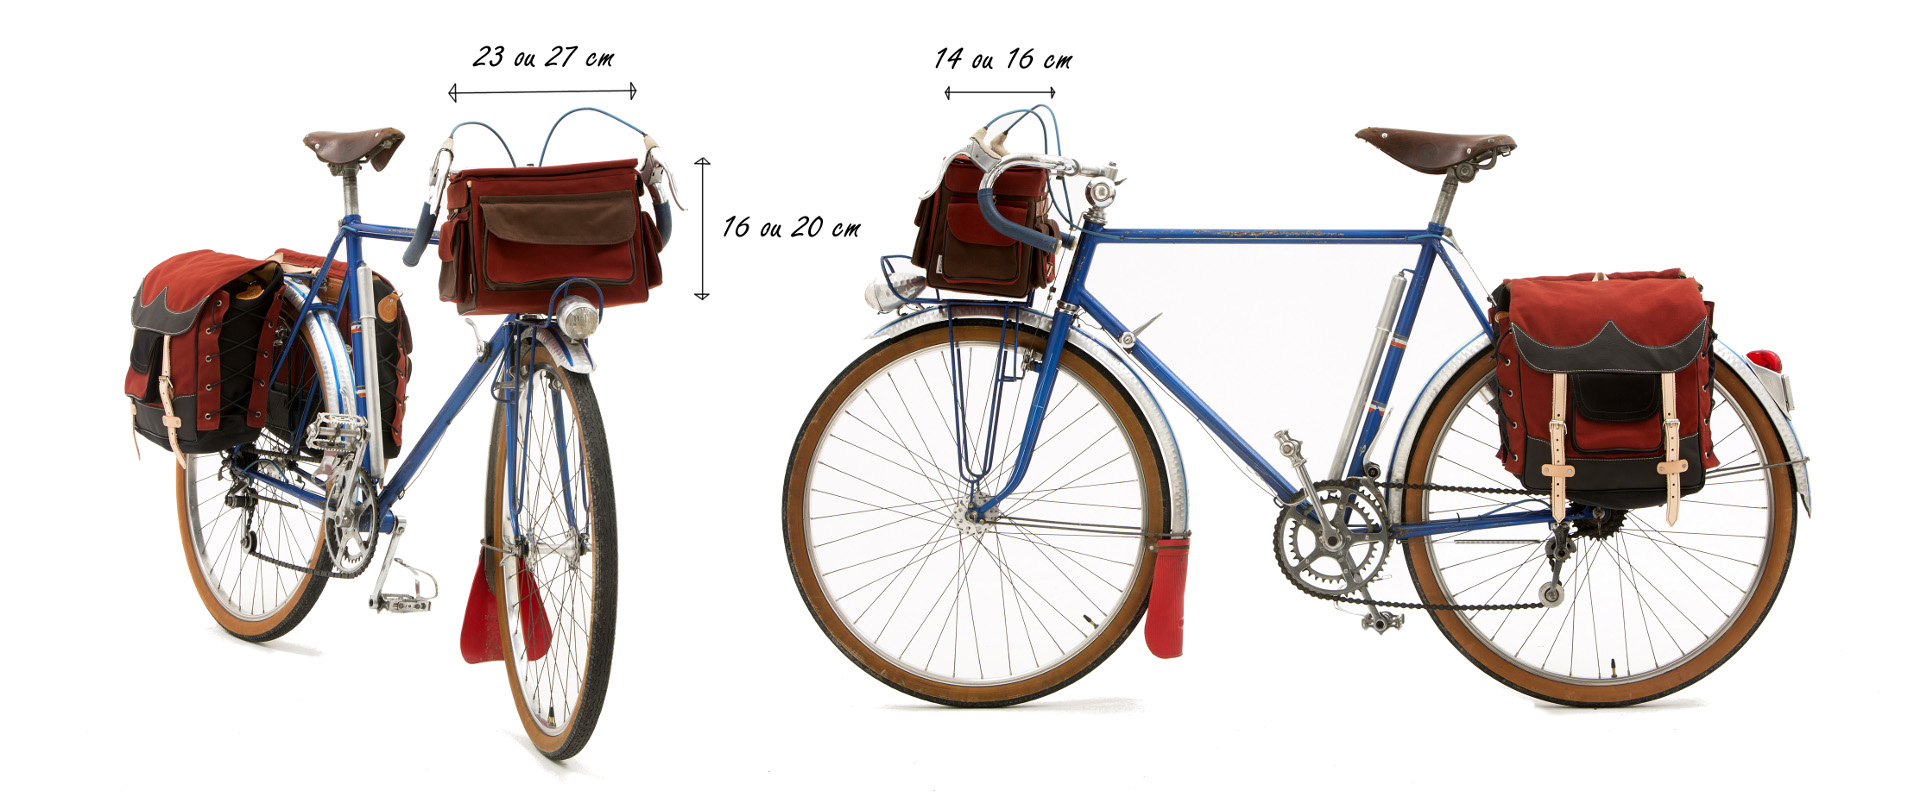 Résultat de recherche d'images pour "sacoche à vélo"